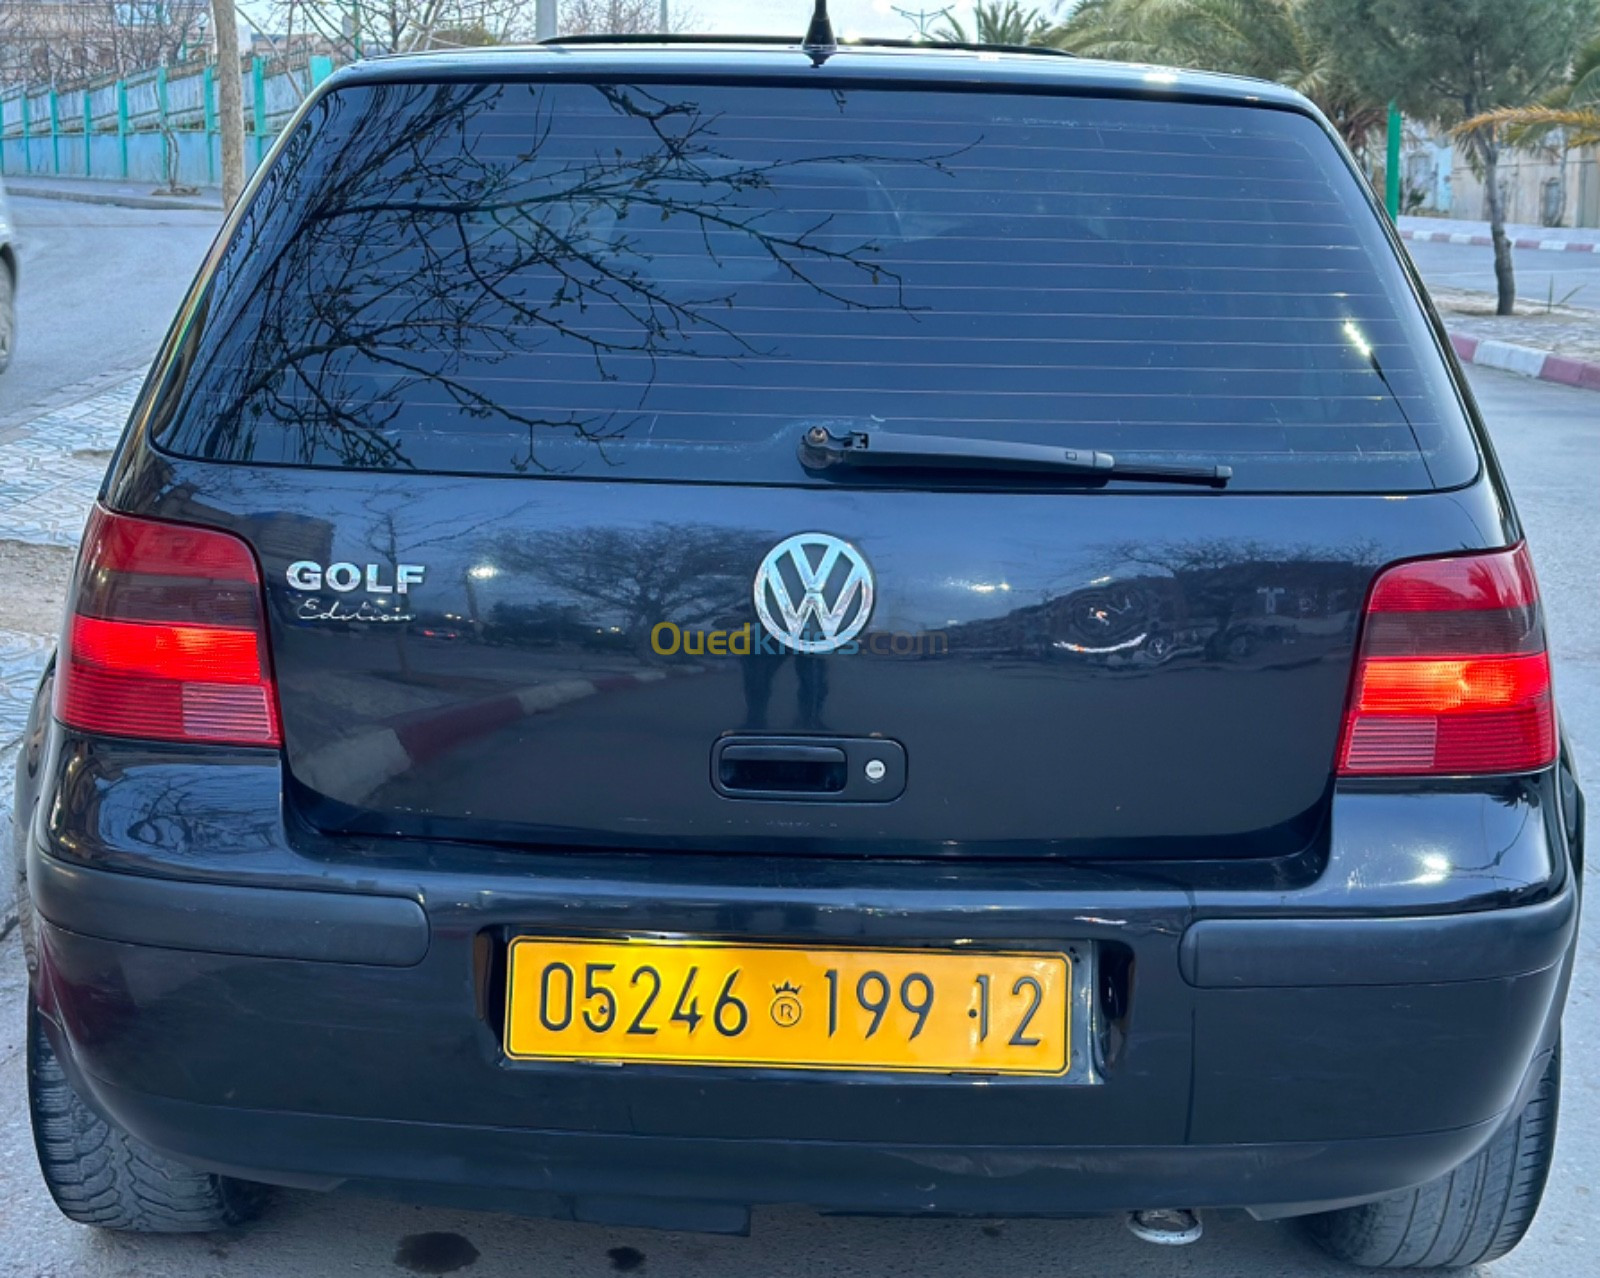 Volkswagen Golf 4 1999 Match